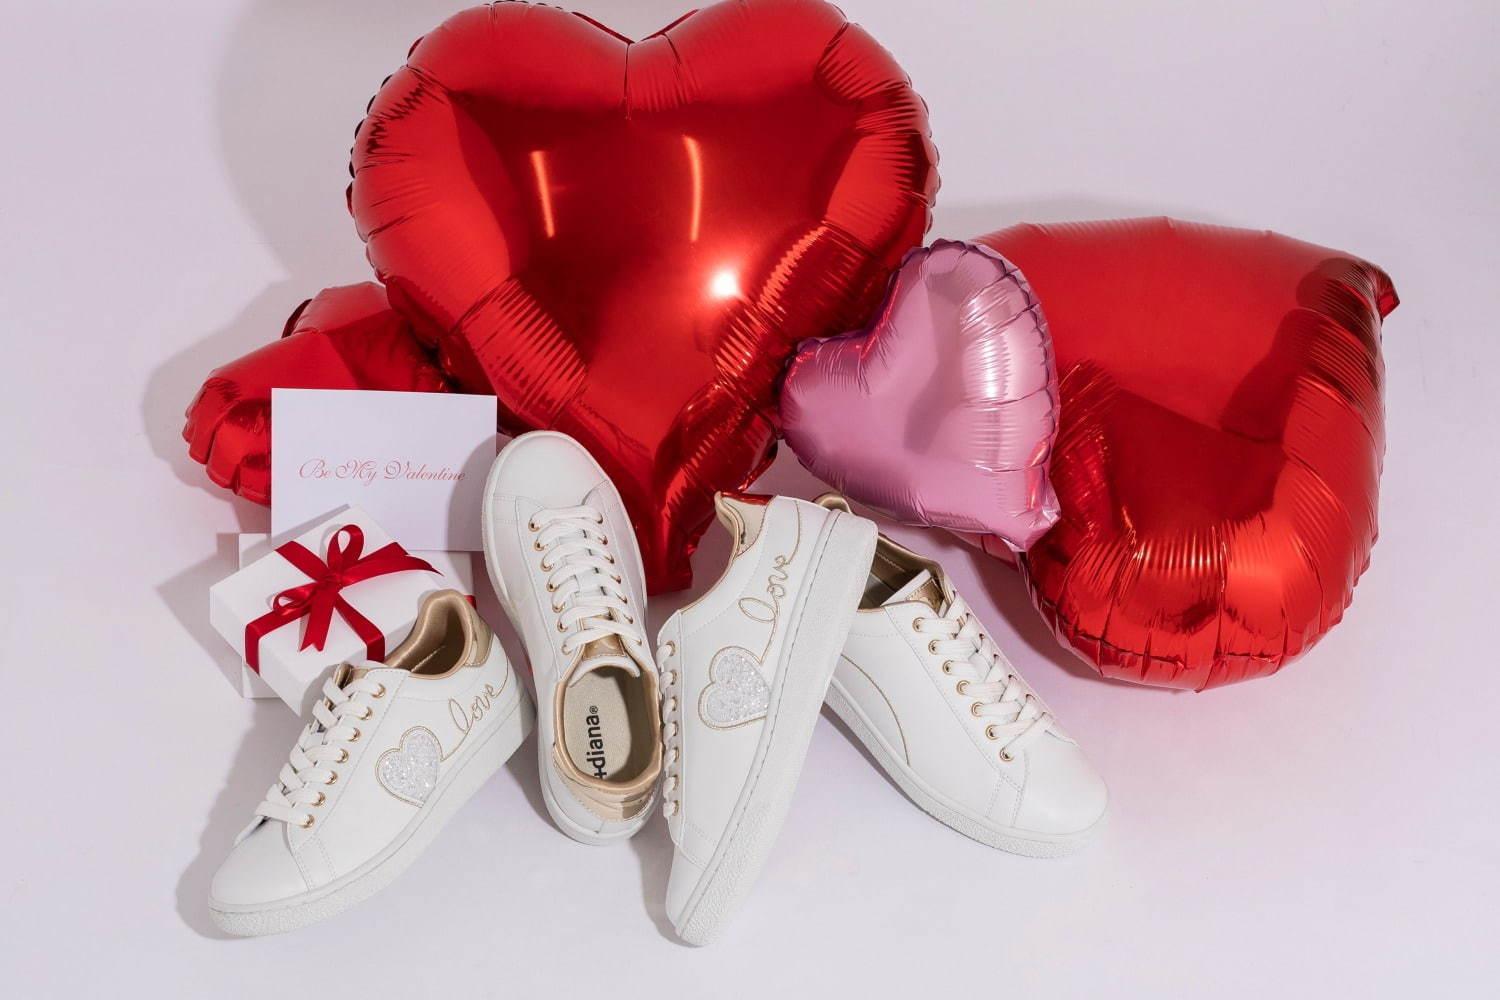 プラス ダイアナのバレンタイン限定スニーカー、キラキラハート×“love刺繍”入りの純白カラー コピー